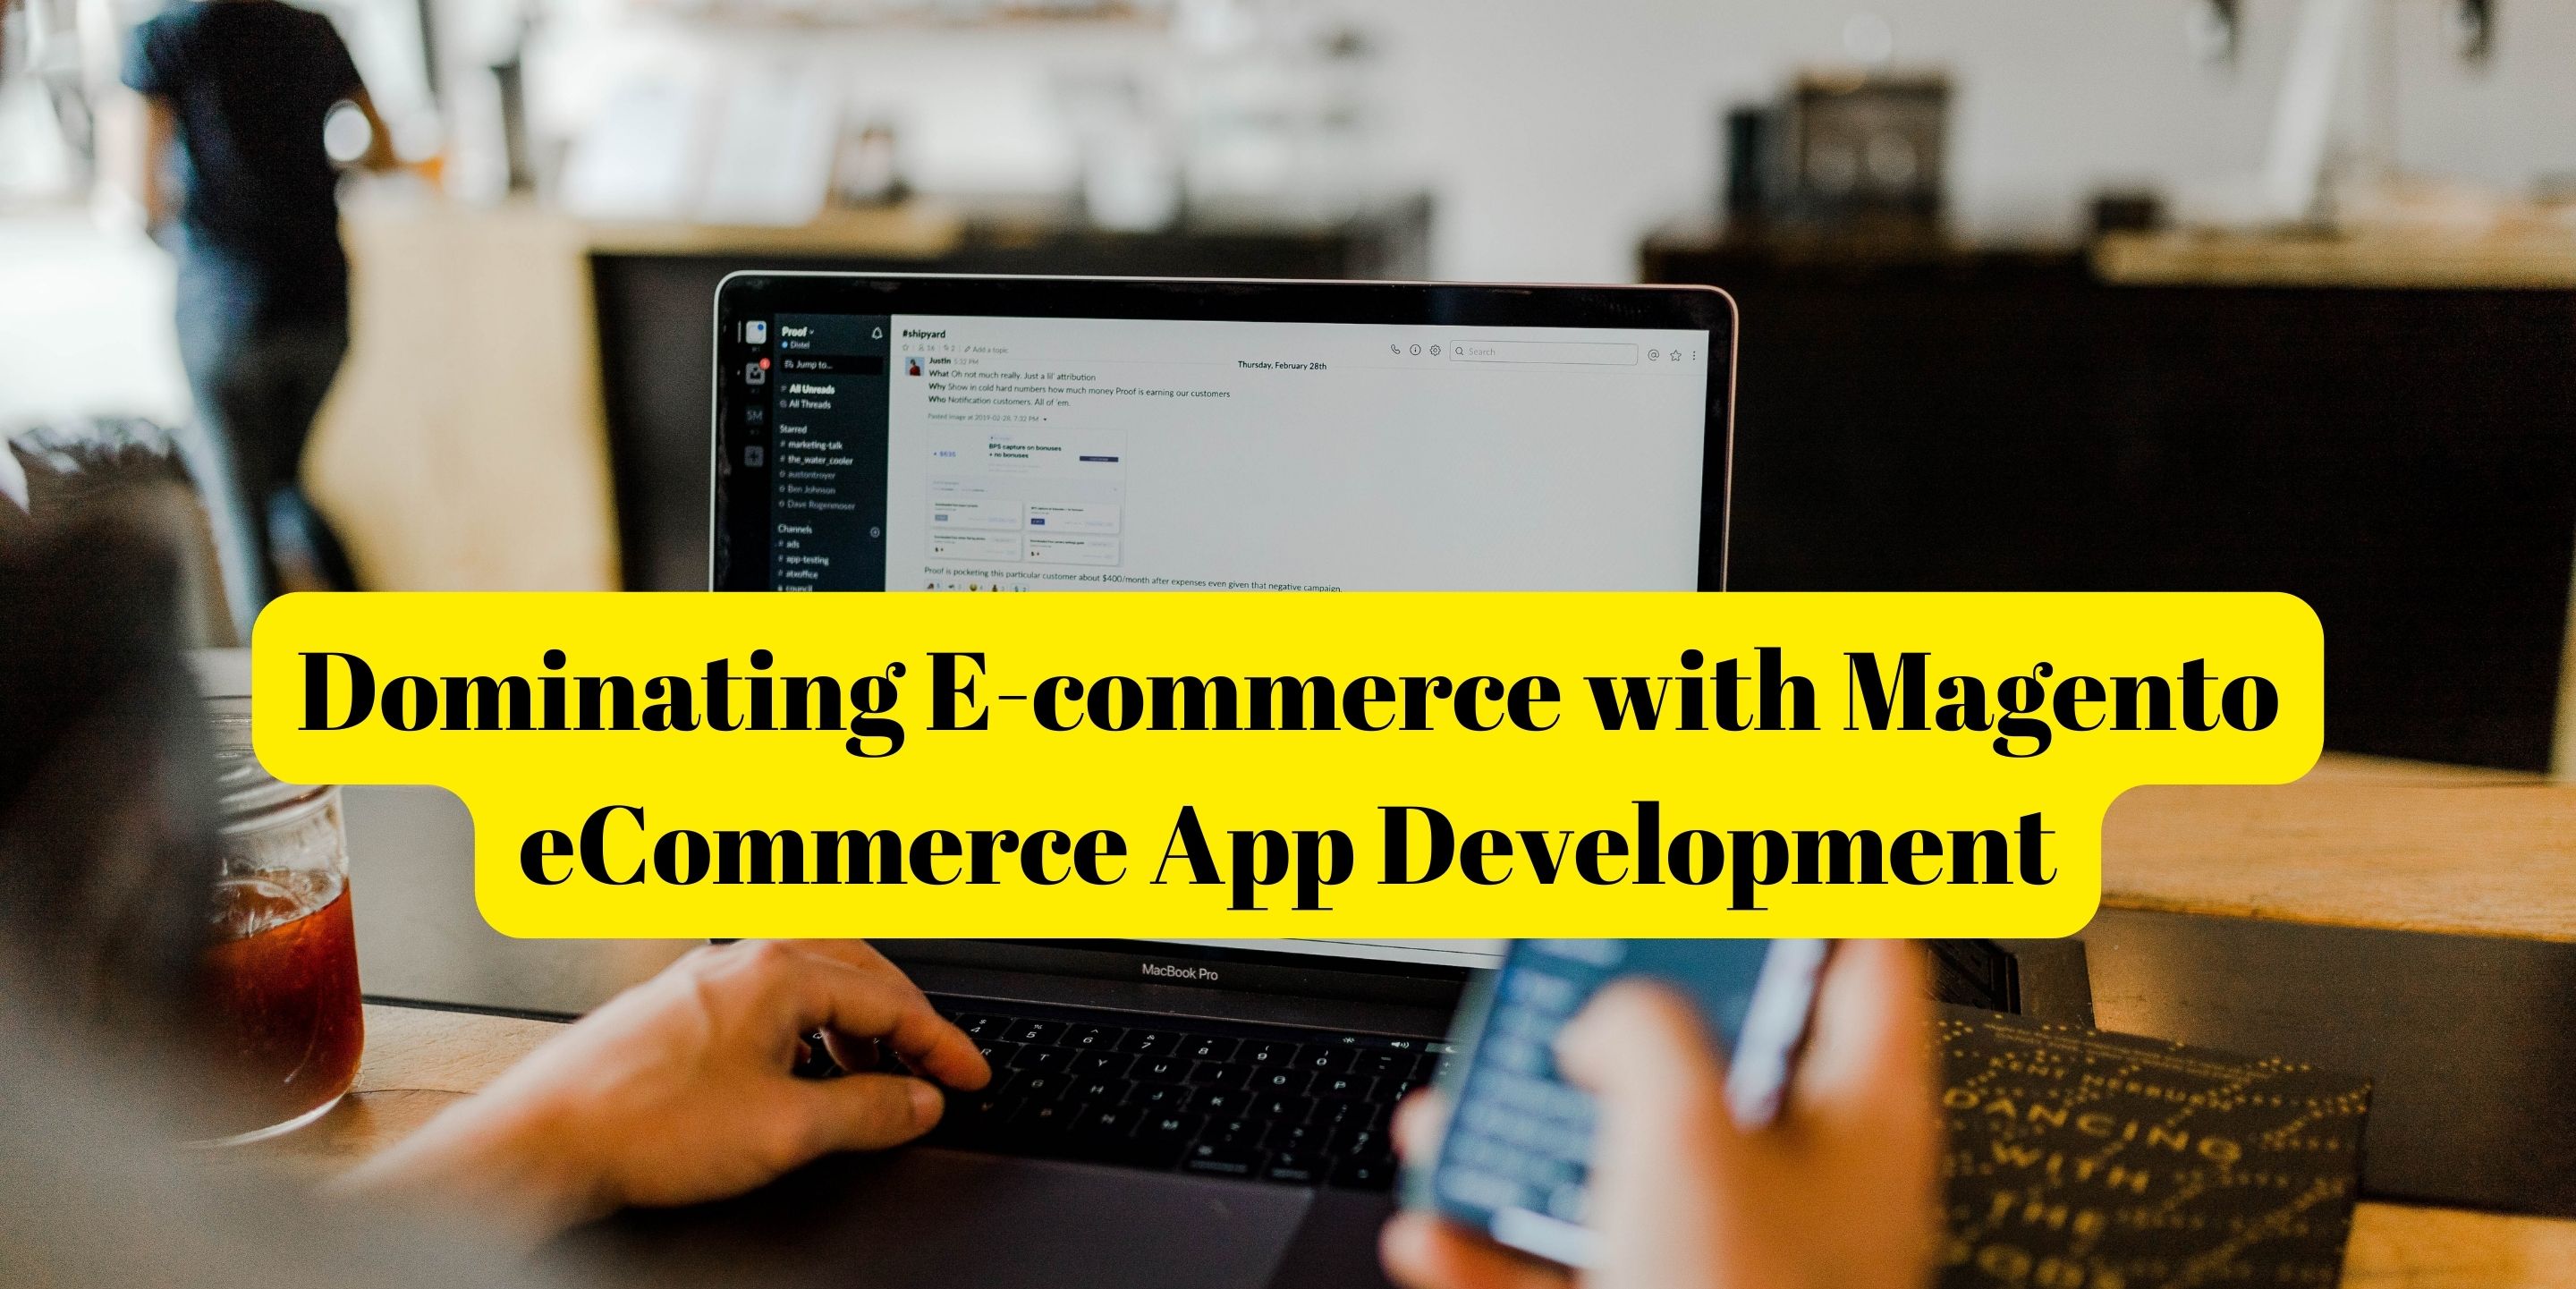 Magento ECommerce App Development